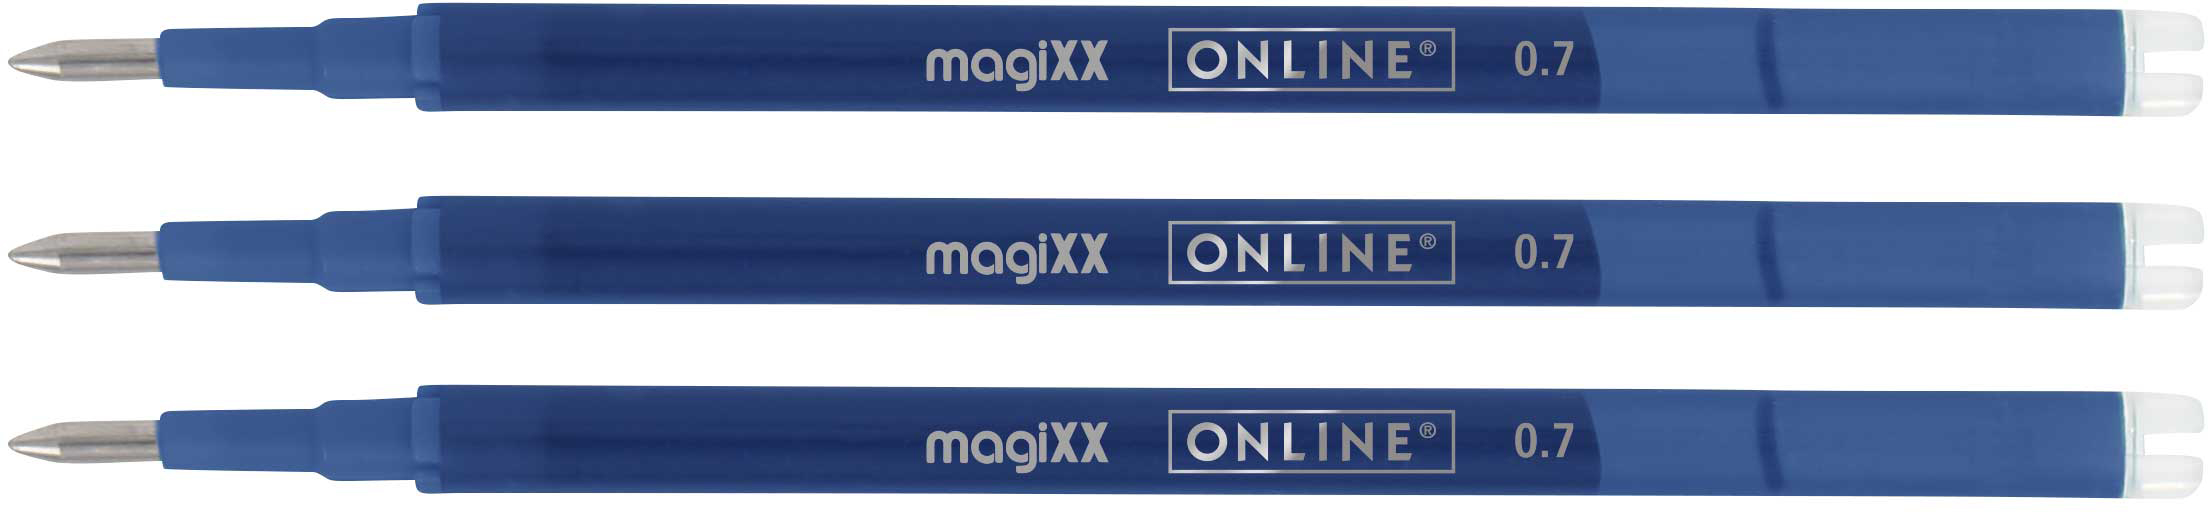 ONLINE Mine Gel magiXX 0.7mm 40160/3 bleu, Tag-Bag 3 pièces